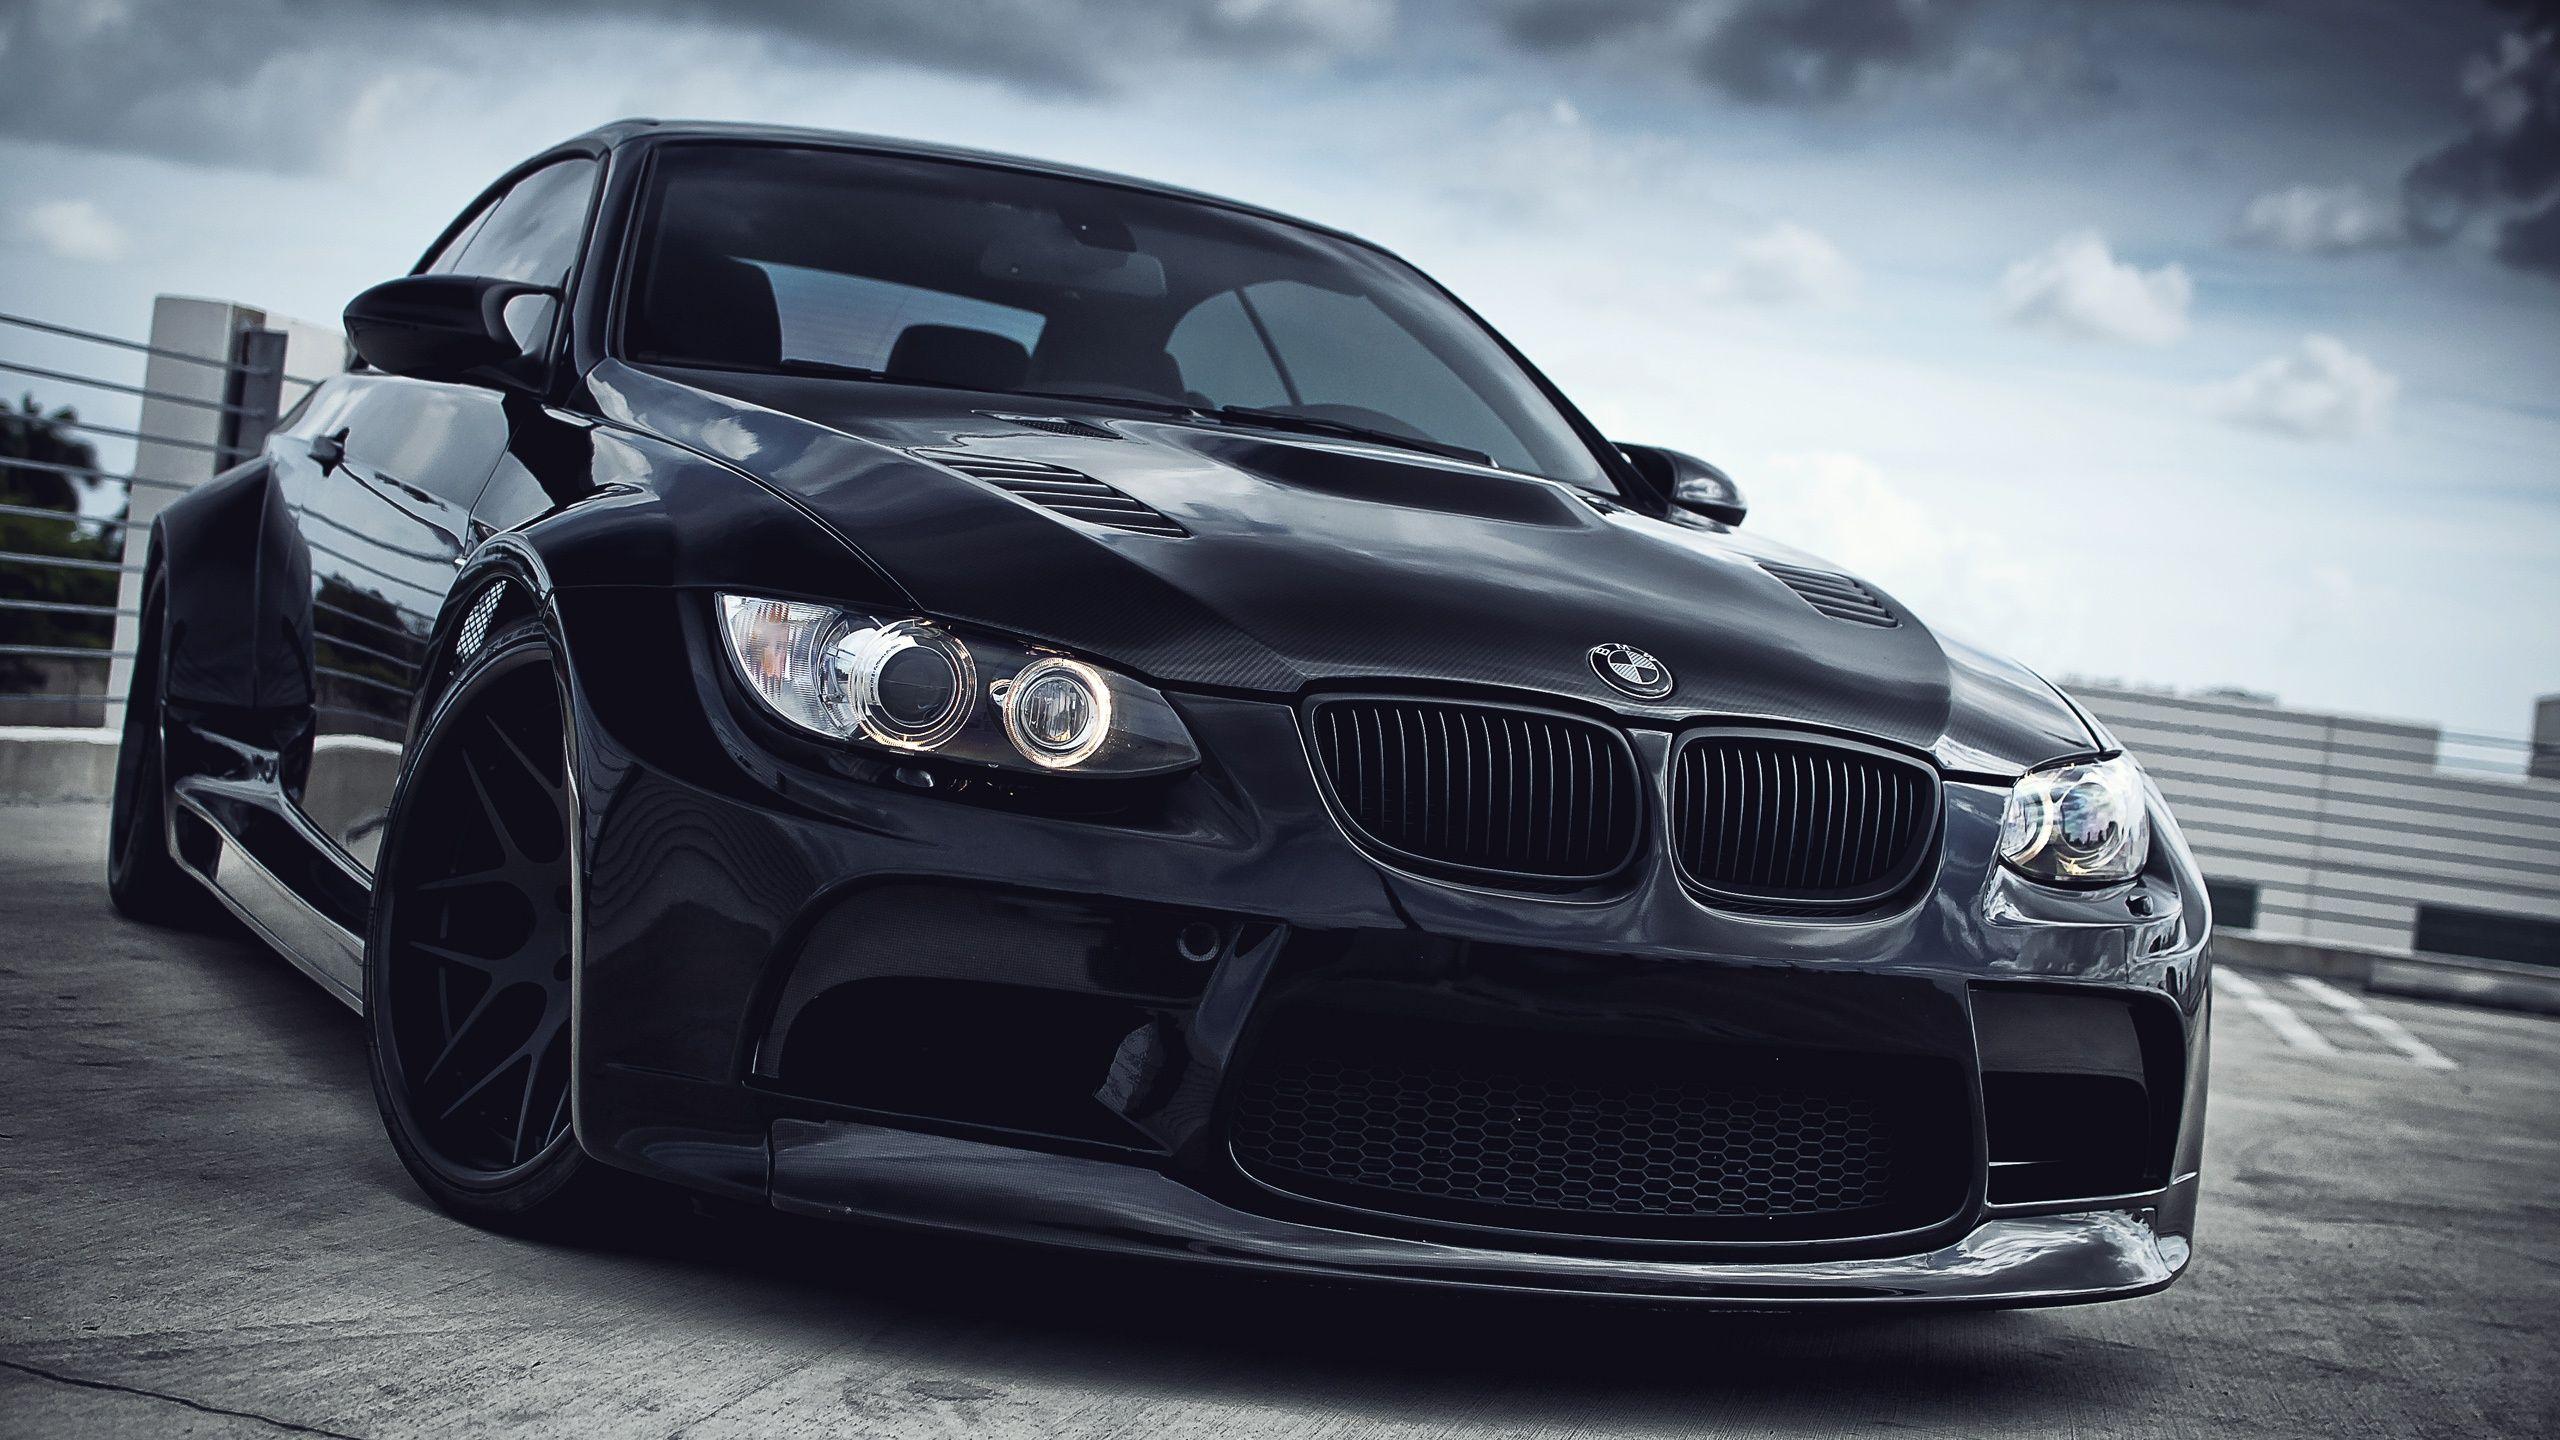 Hình nền 2560x1440 Xe BMW M3 màu đen 2560x1600 Hình ảnh HD, Hình ảnh